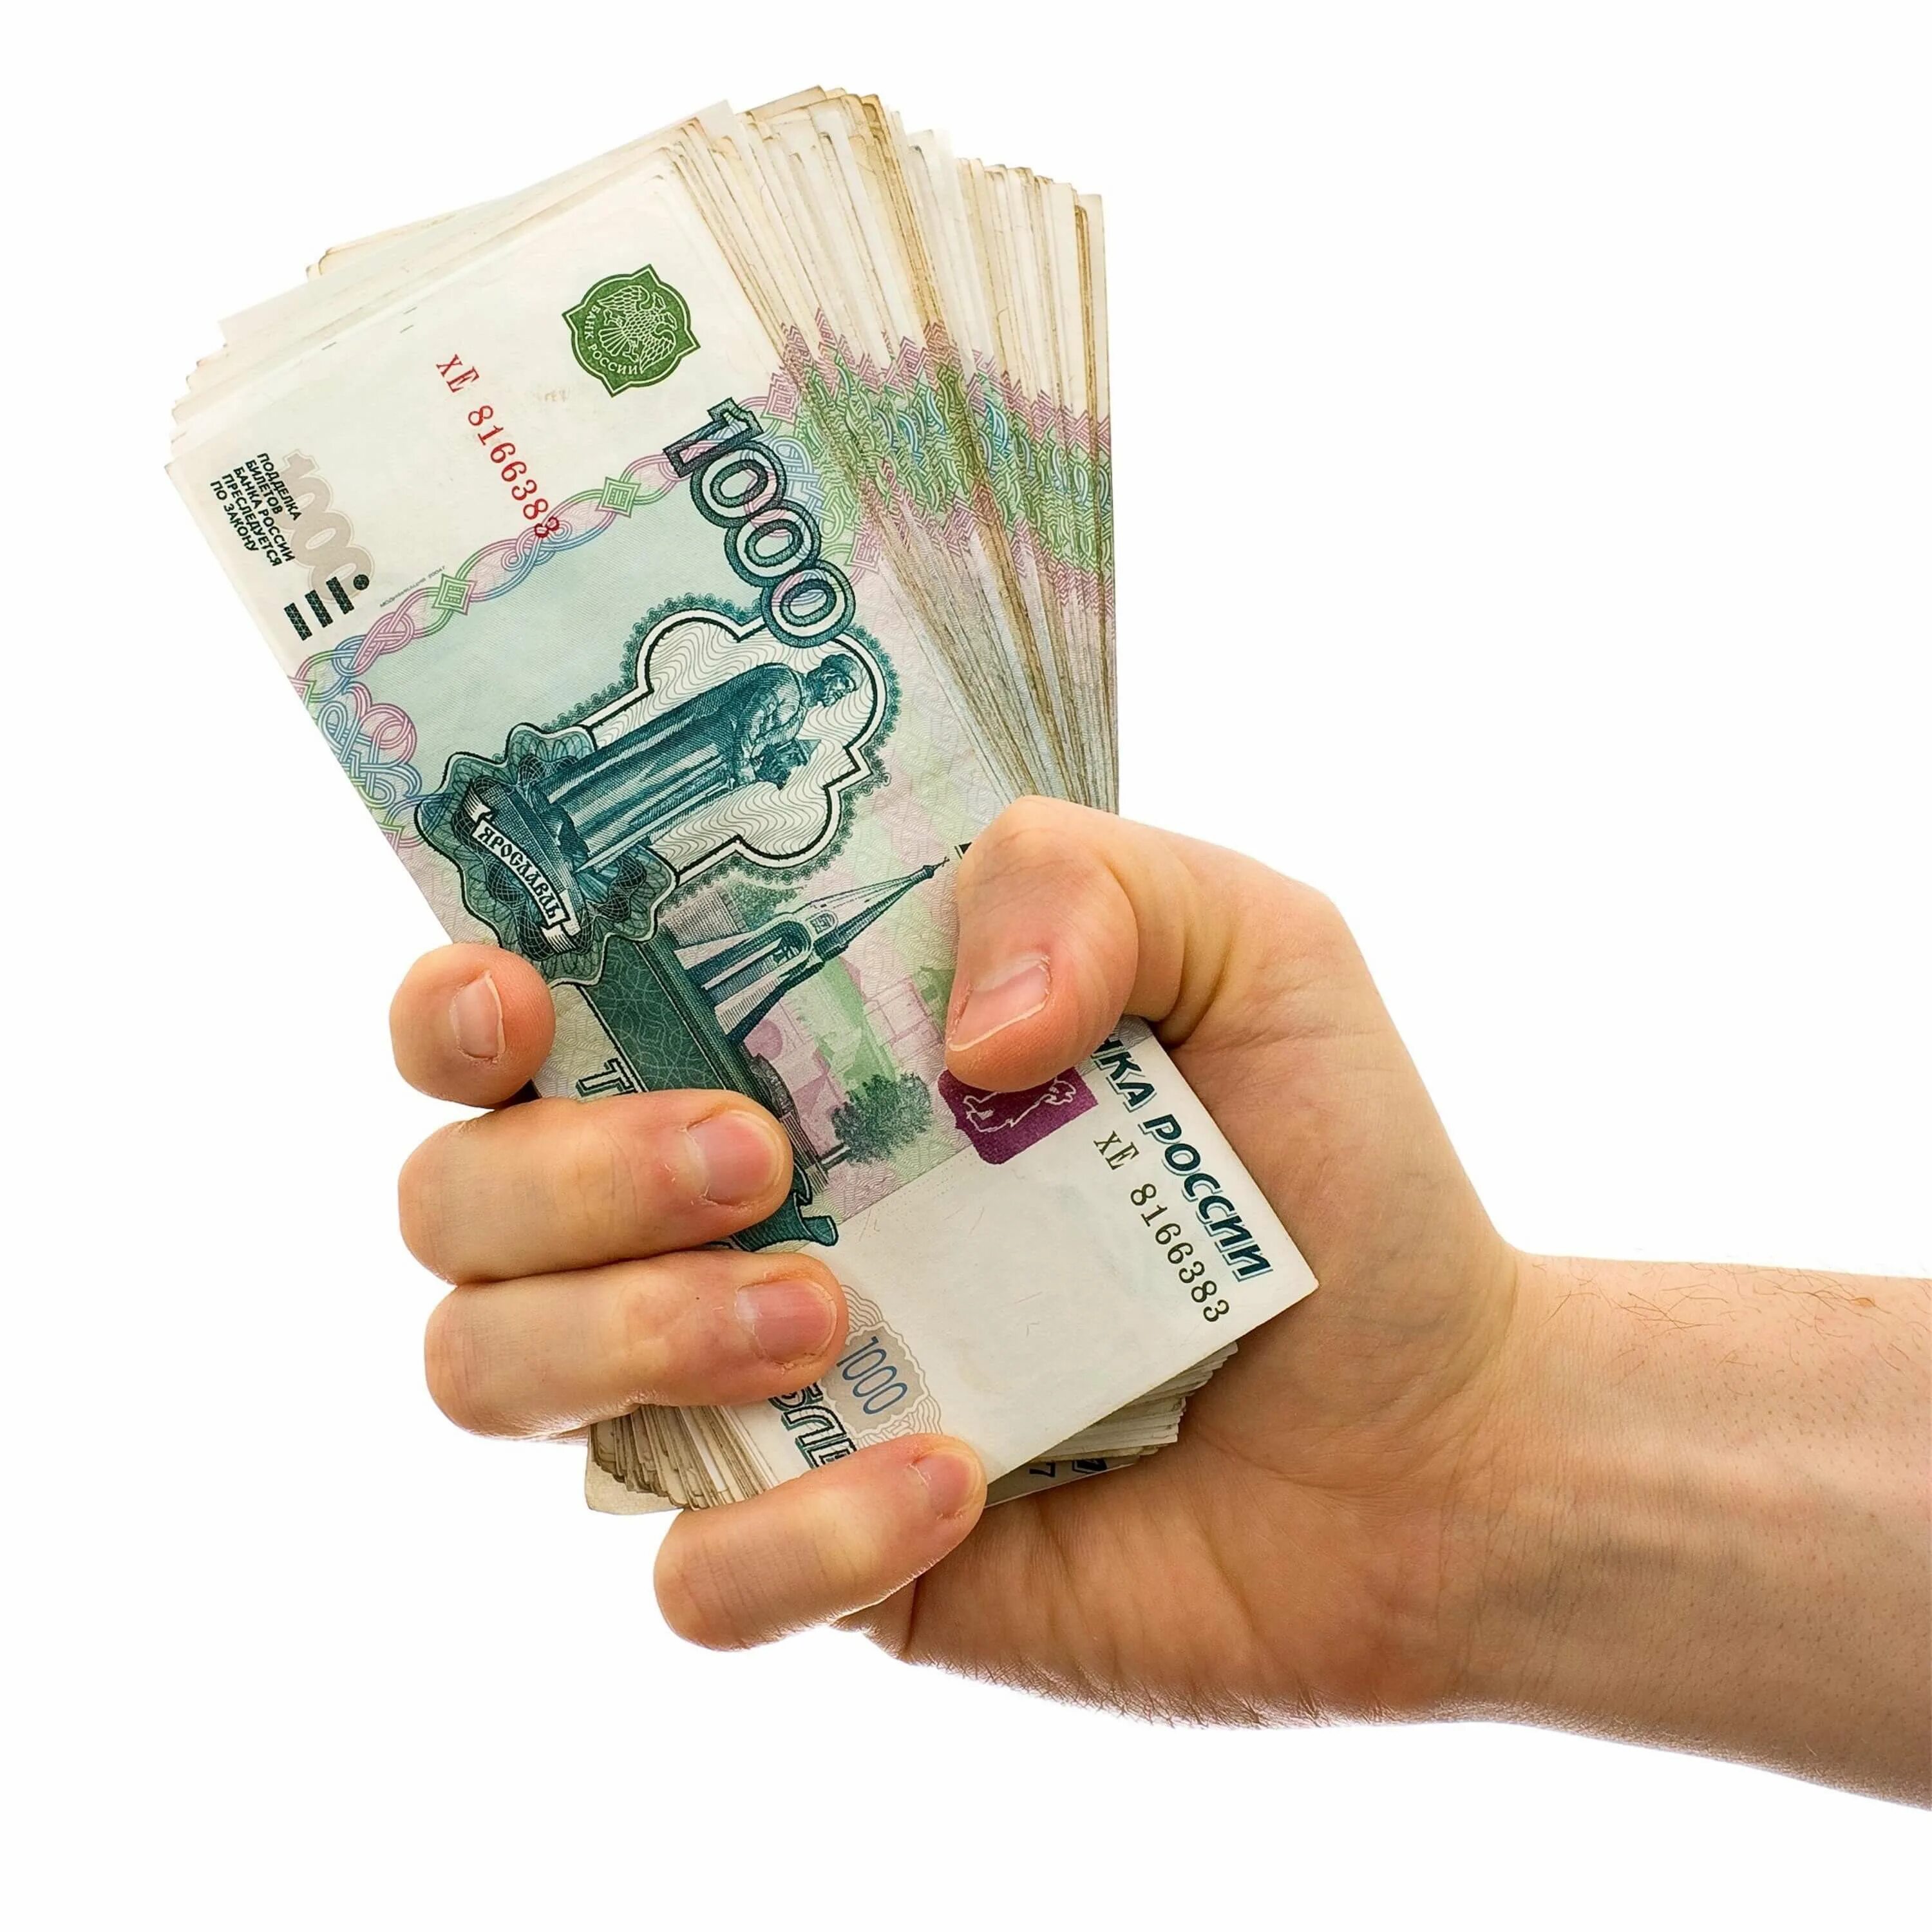 500 000 рублей в долг. Деньги в руках. Деньги рубли. Рубли в руках. Деньги в руках на белом фоне.